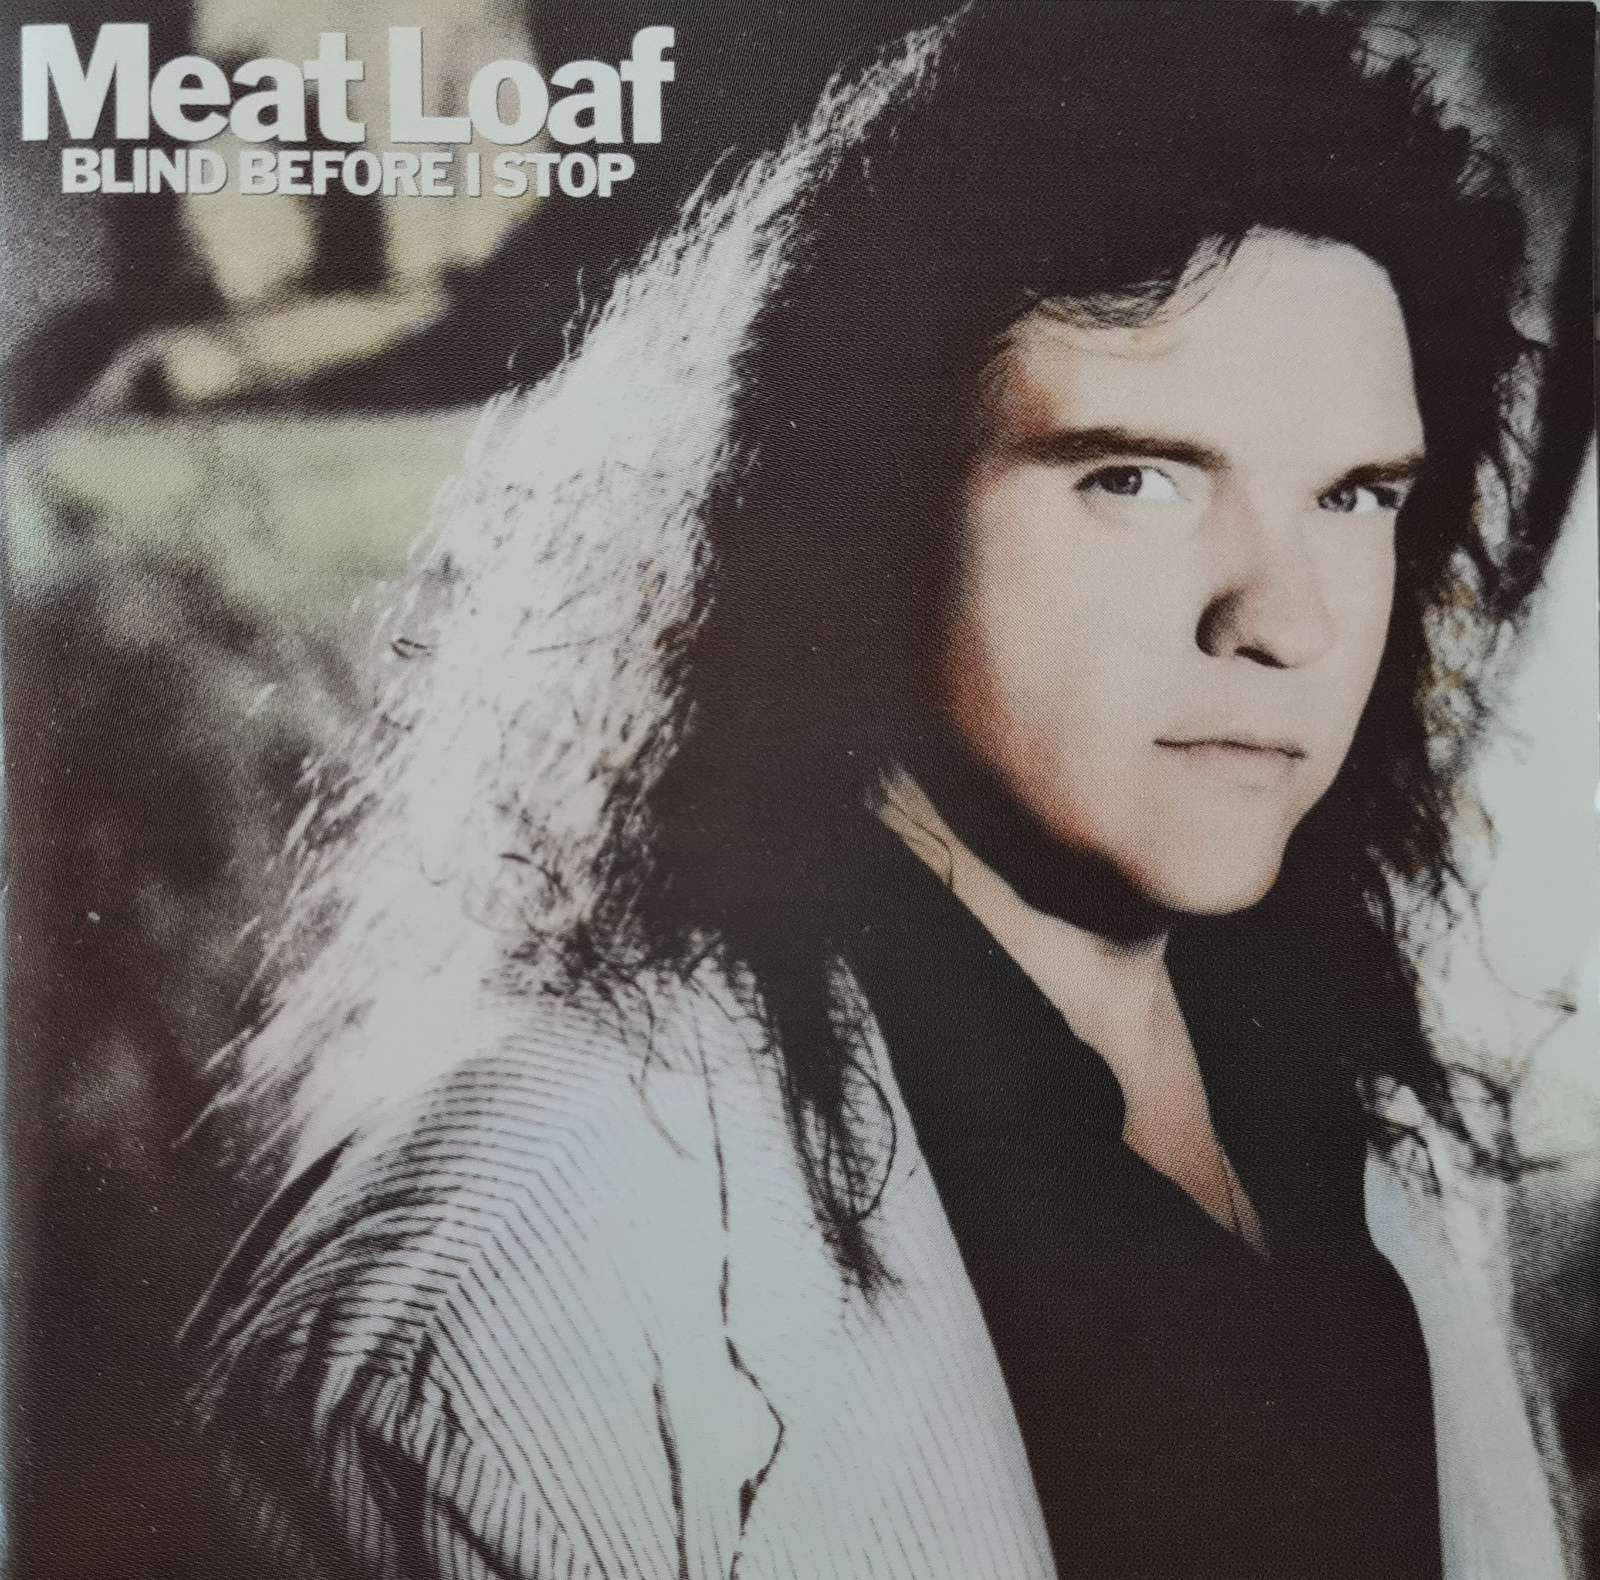 Meat Loaf - Blind Before I Stop (CD)